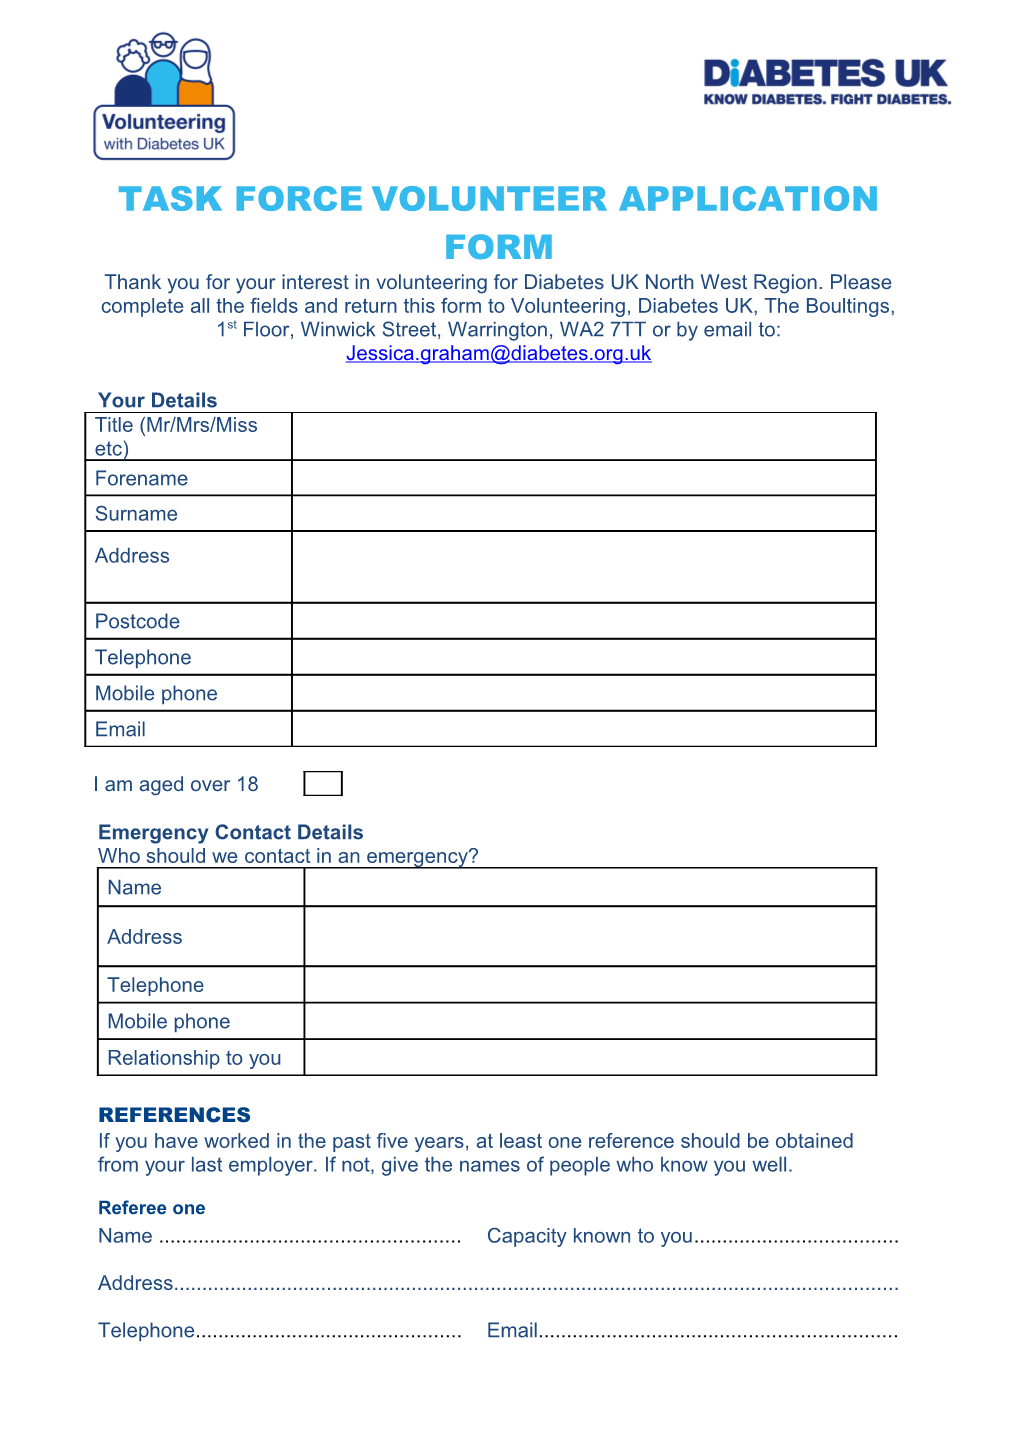 Task Force Volunteer Application Form